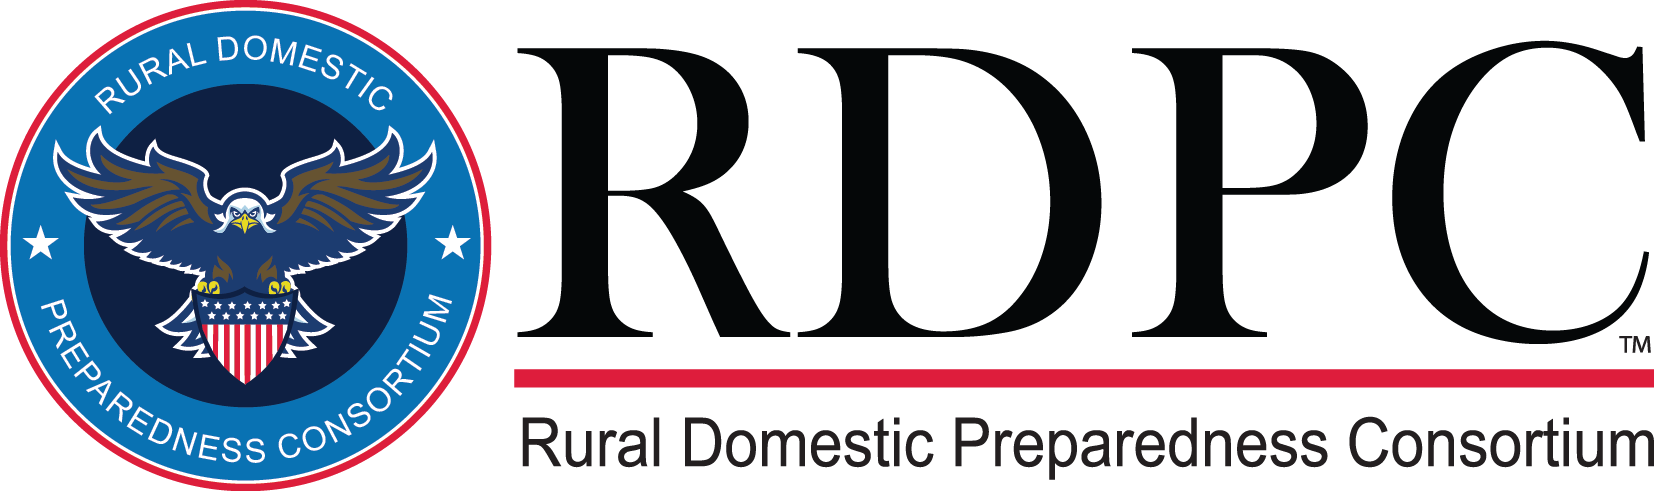 Rural Domestic Preparedness Consortium